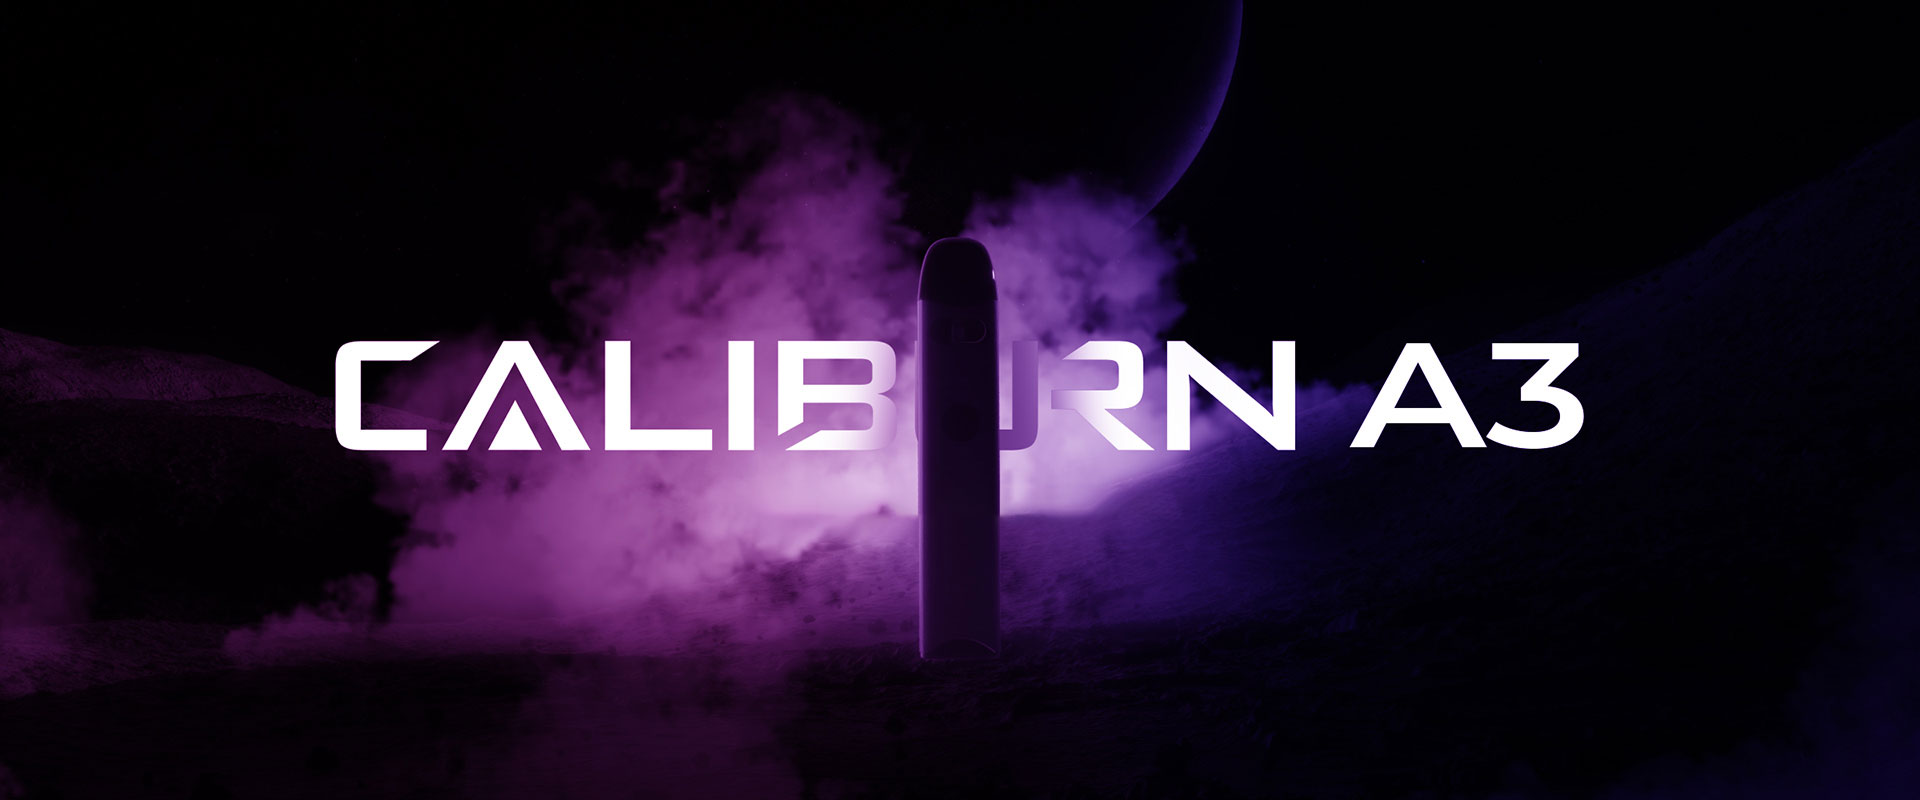 caliburn-a3-pod